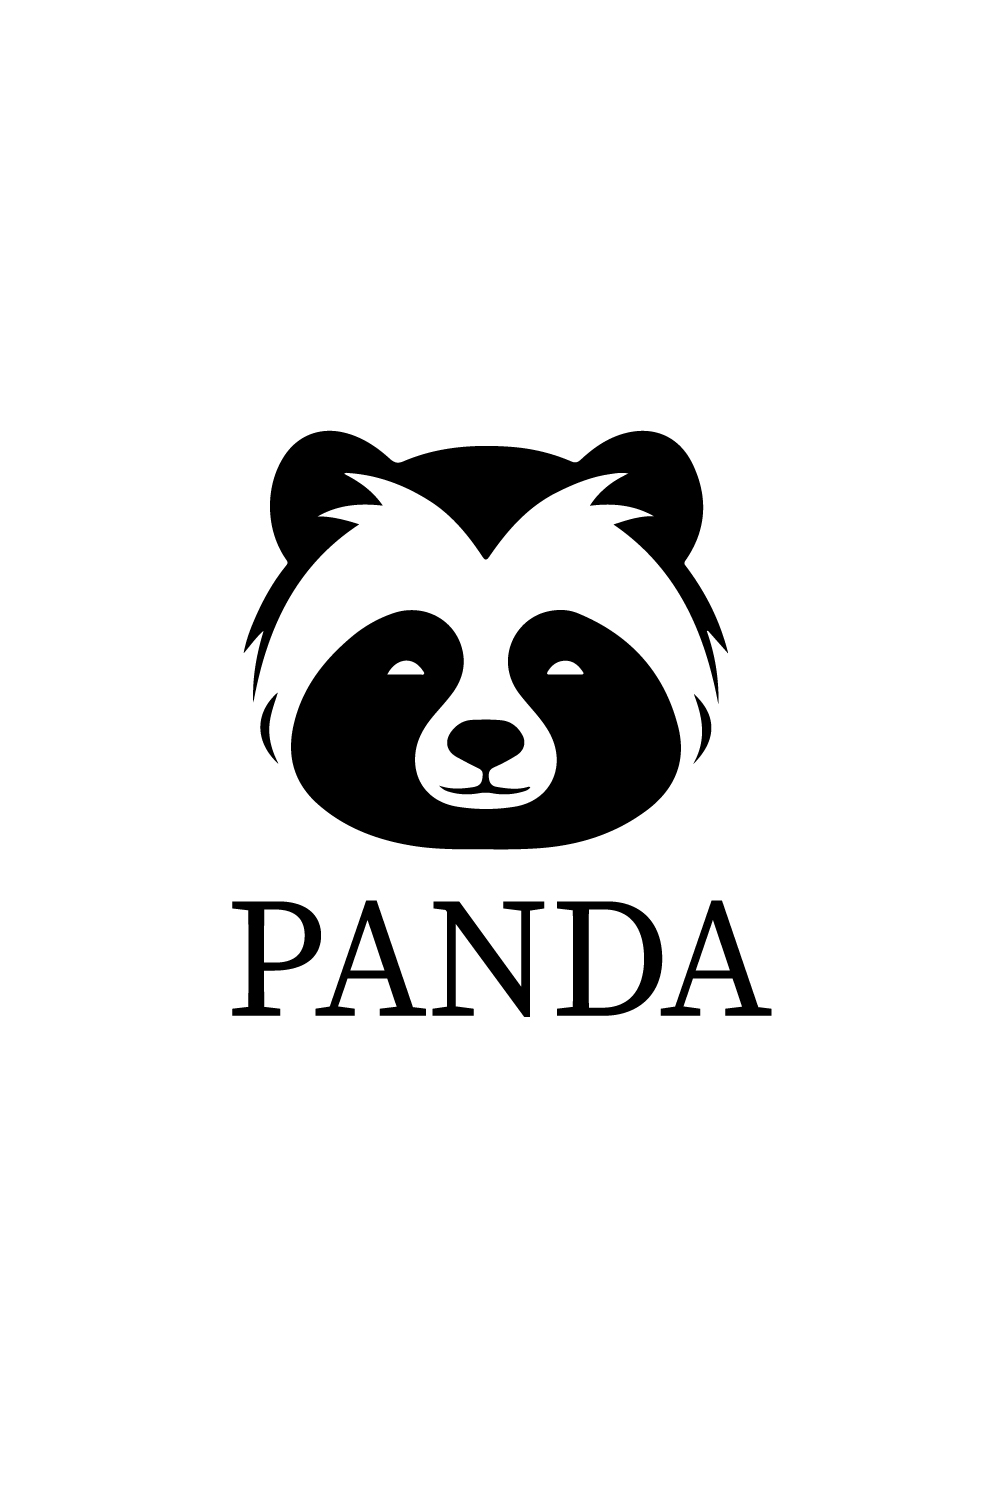 minimal panda logo design pinterest preview image.